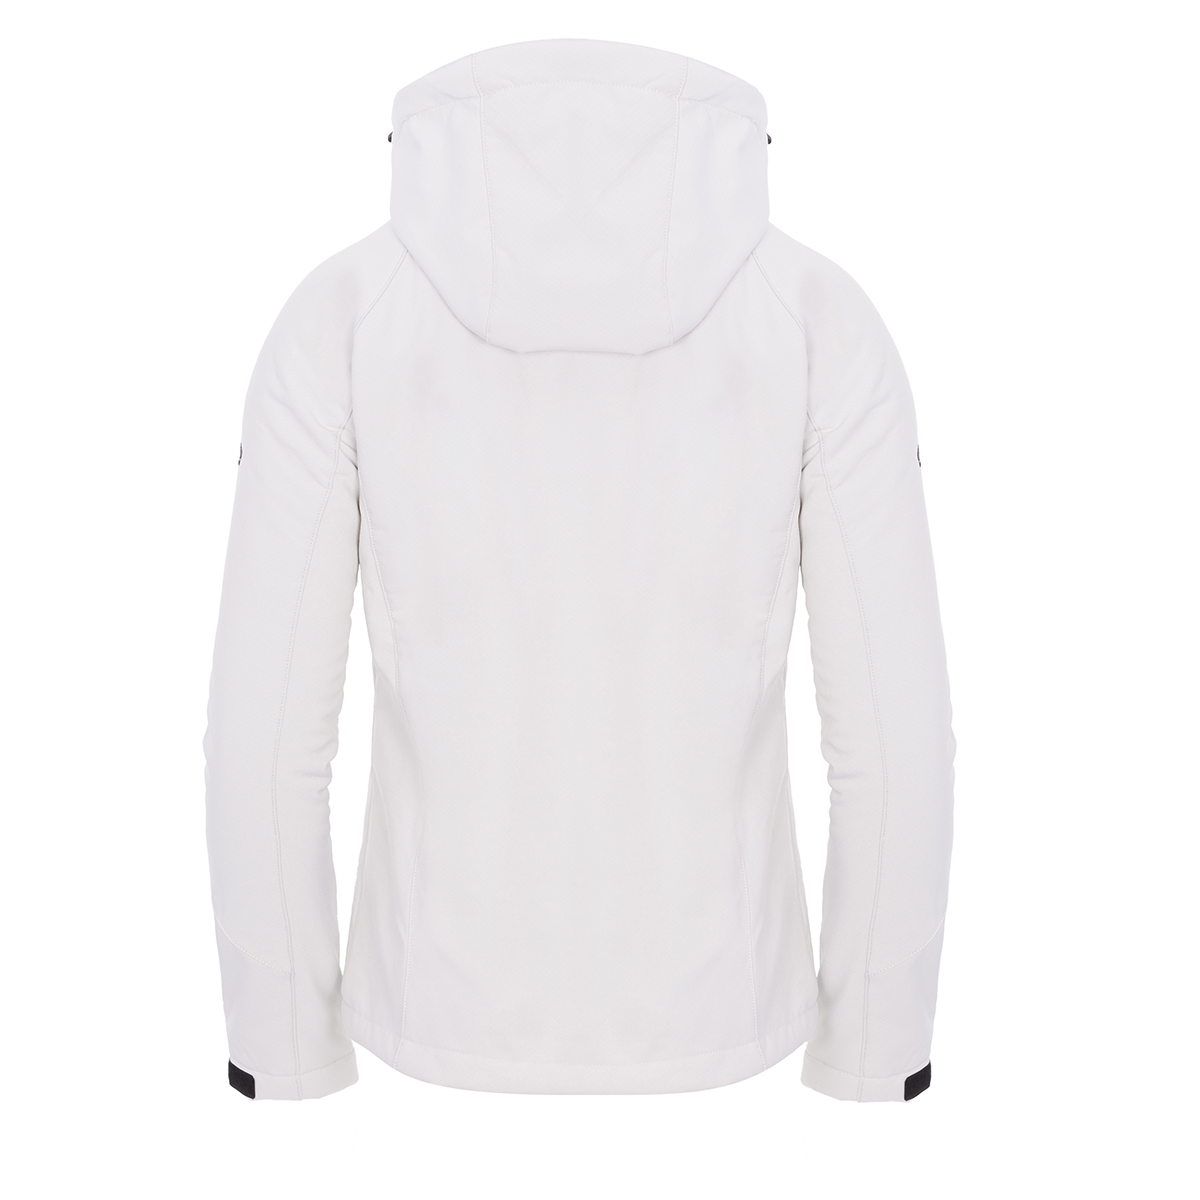 Izas Oshawa Women's Hooded Softshell Jacket (Small, White/White) - image 2 of 4